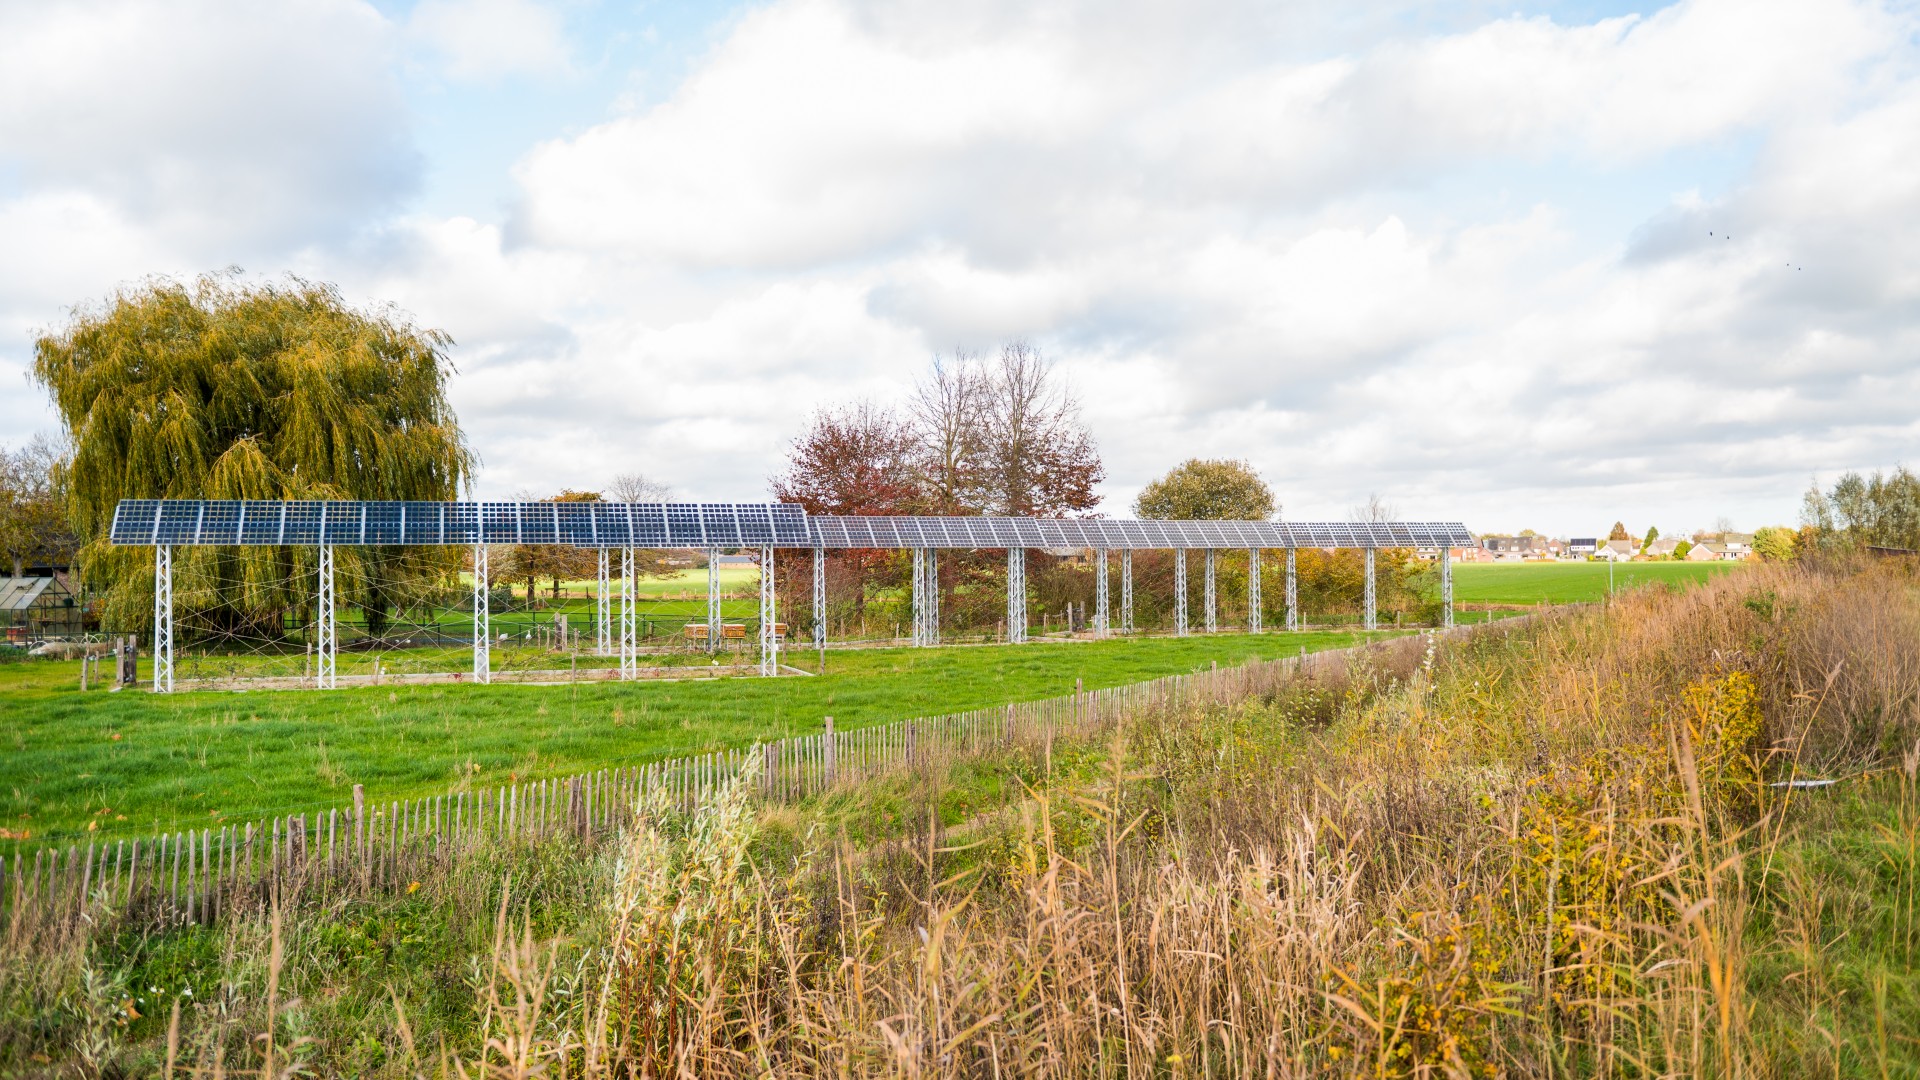 Privacy én duurzame energie met kunstzinnige zonnehagen